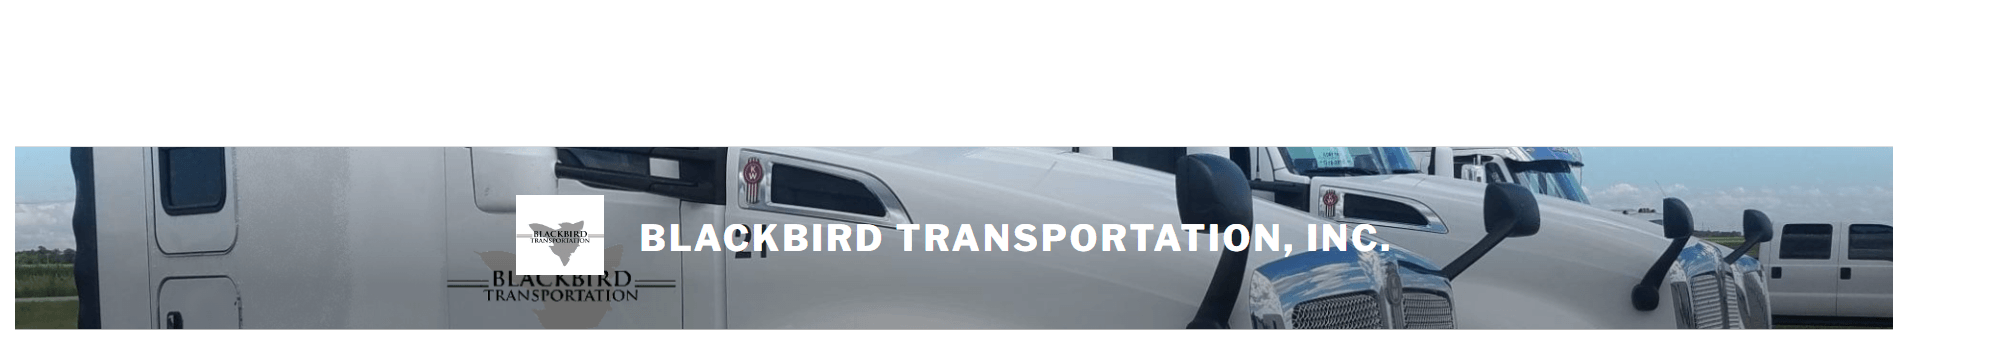 Blackbird Transportation, Inc.